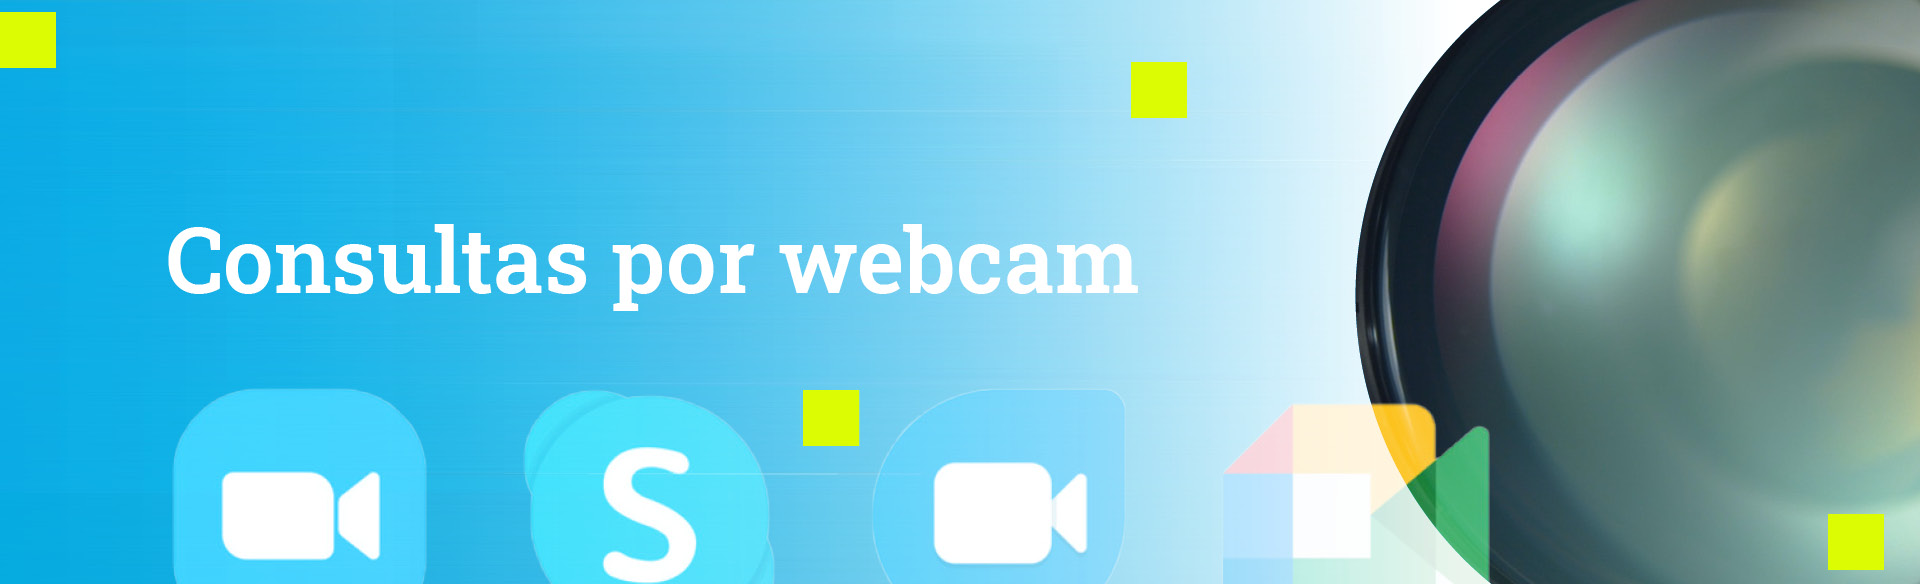 consultas online por webcam servicio asesoria de abogados especializados